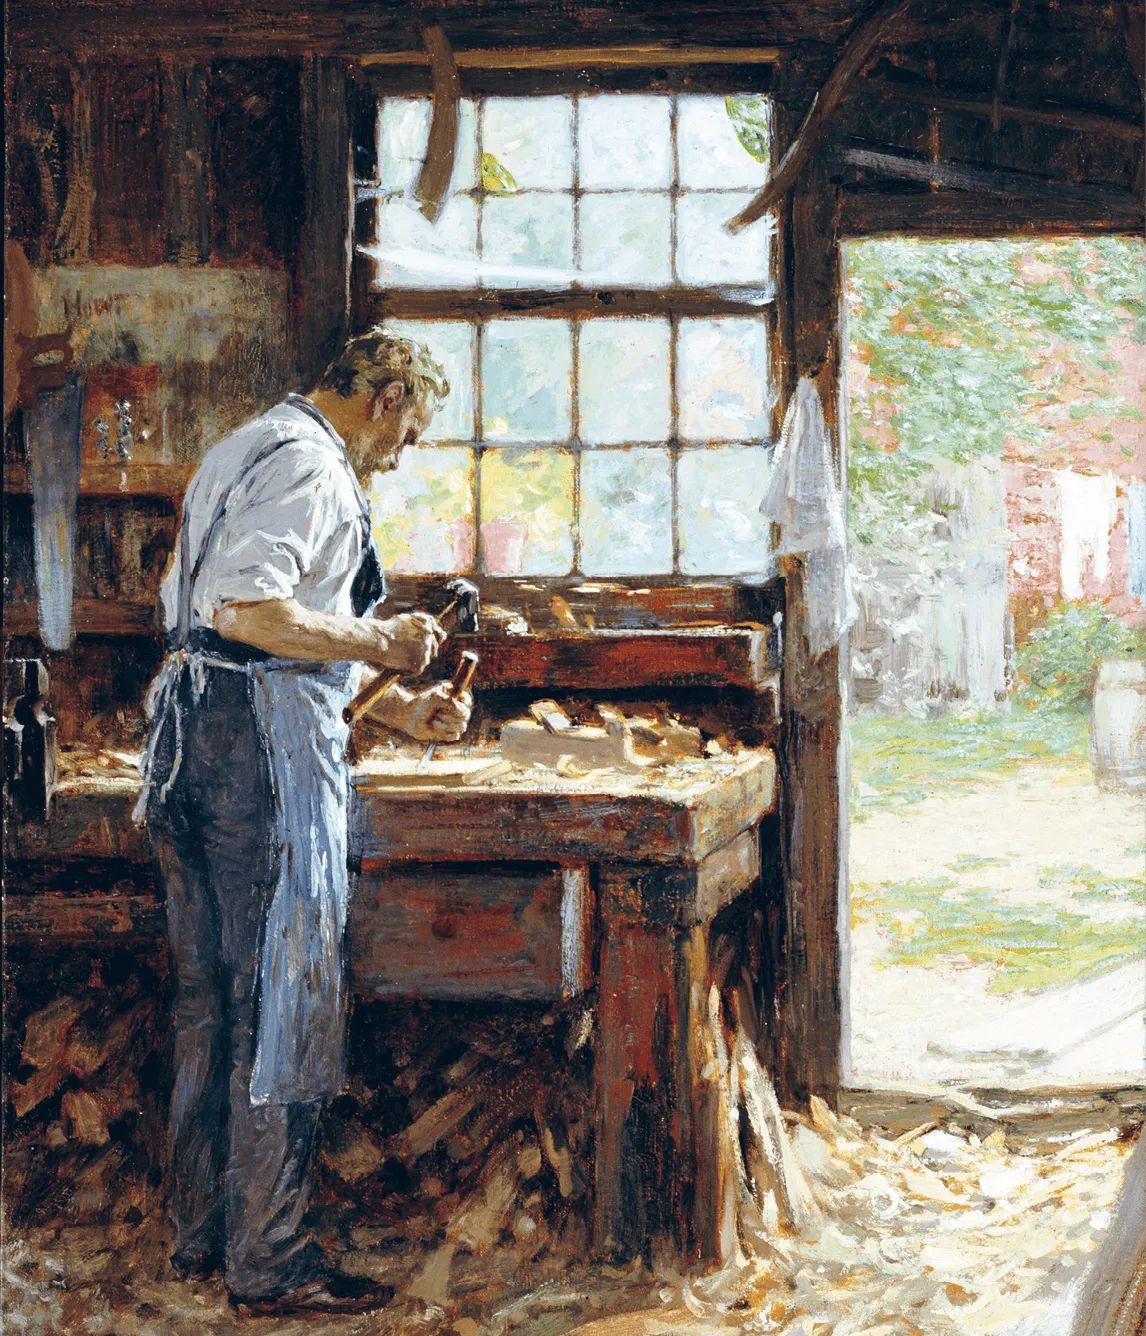 Edward Henry Potthast,
Village Carpenter, 1899